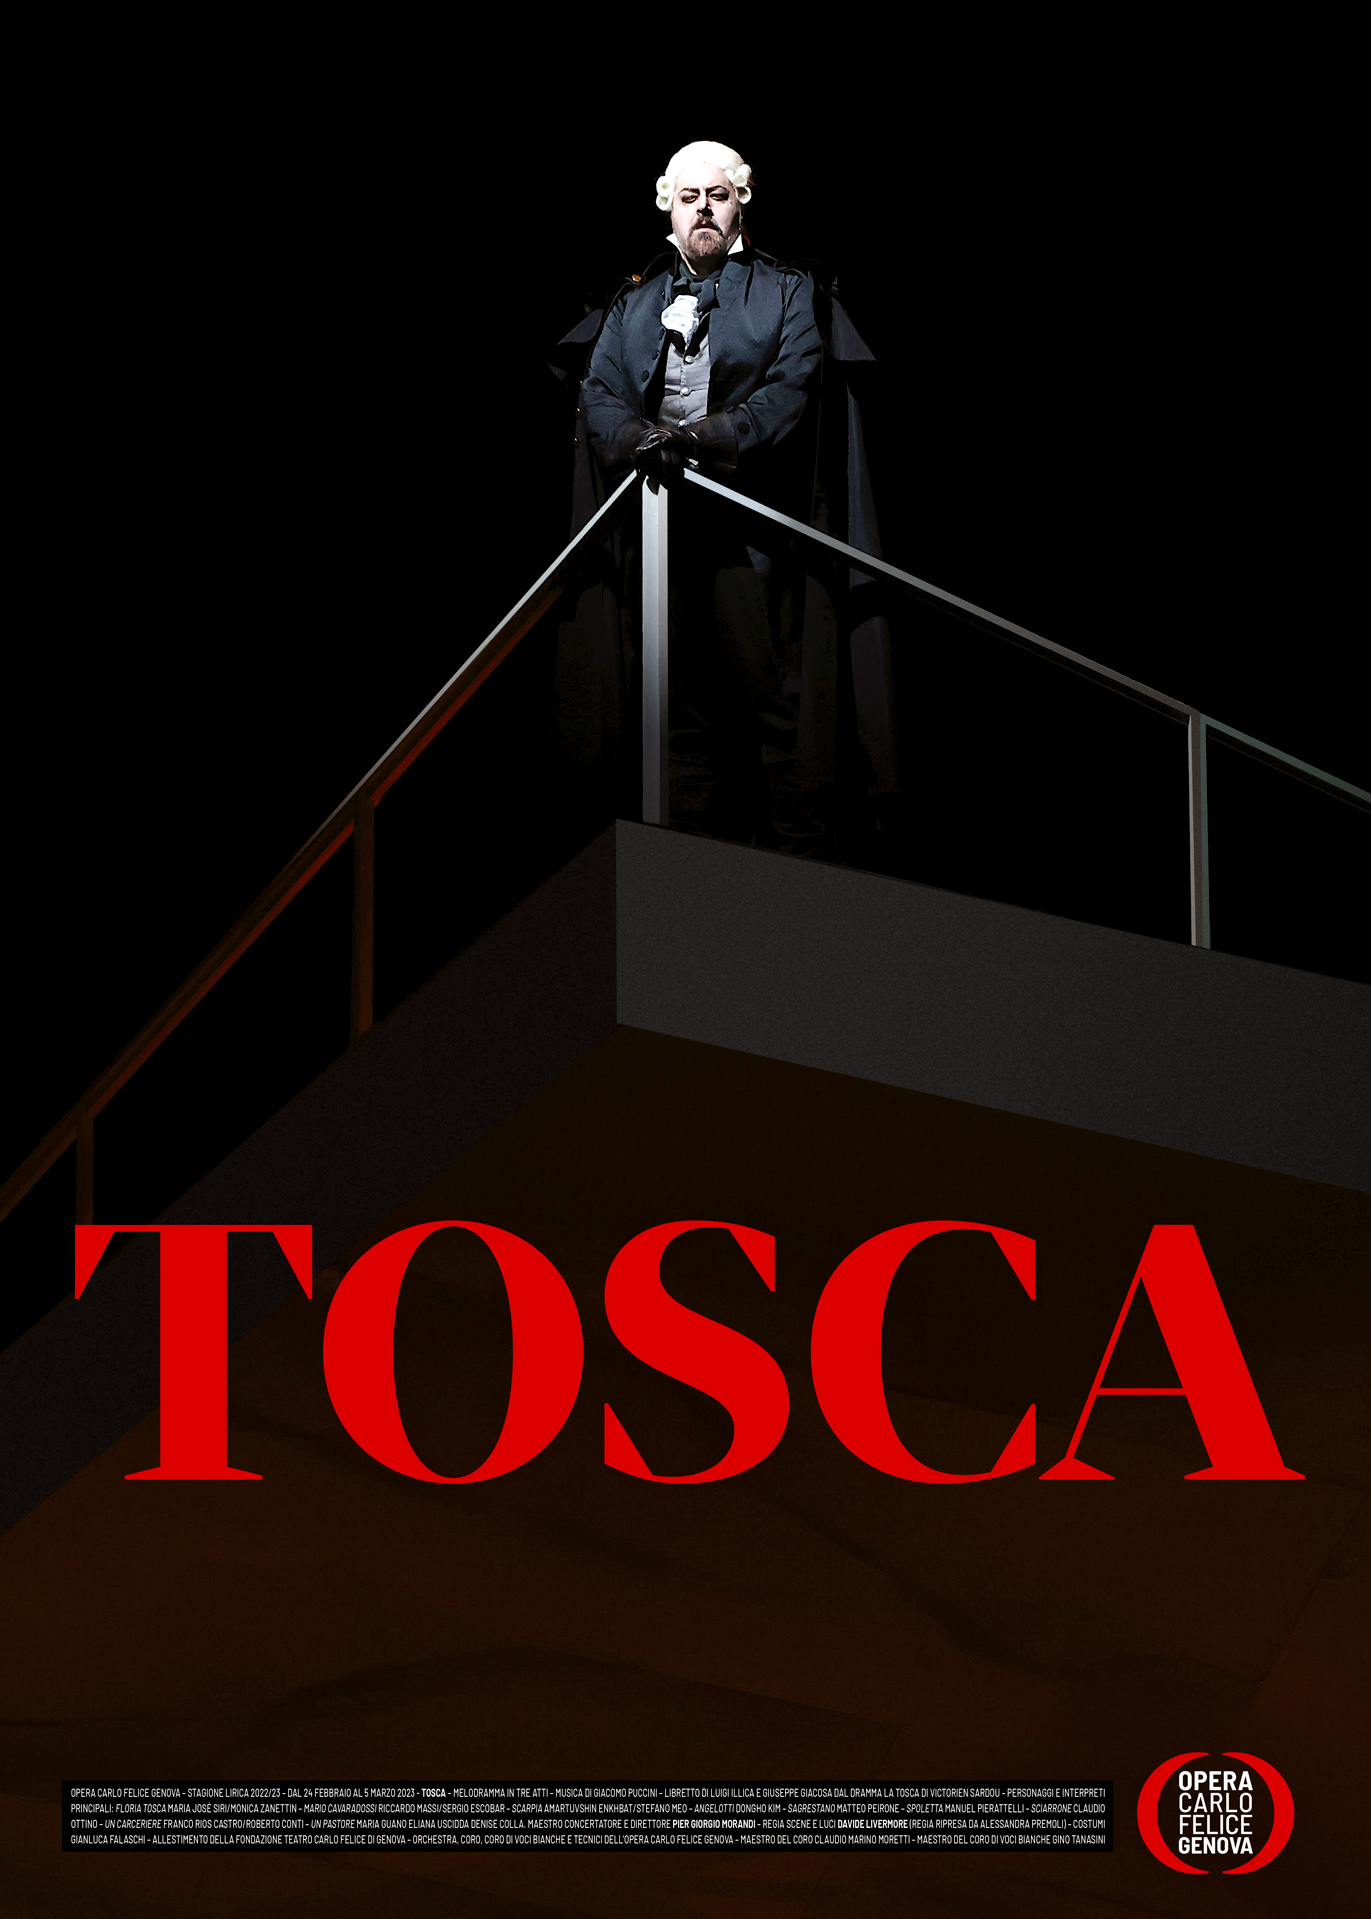 Opera Carlo Felice Tosca Manifesto3 Rossetti Brand Design